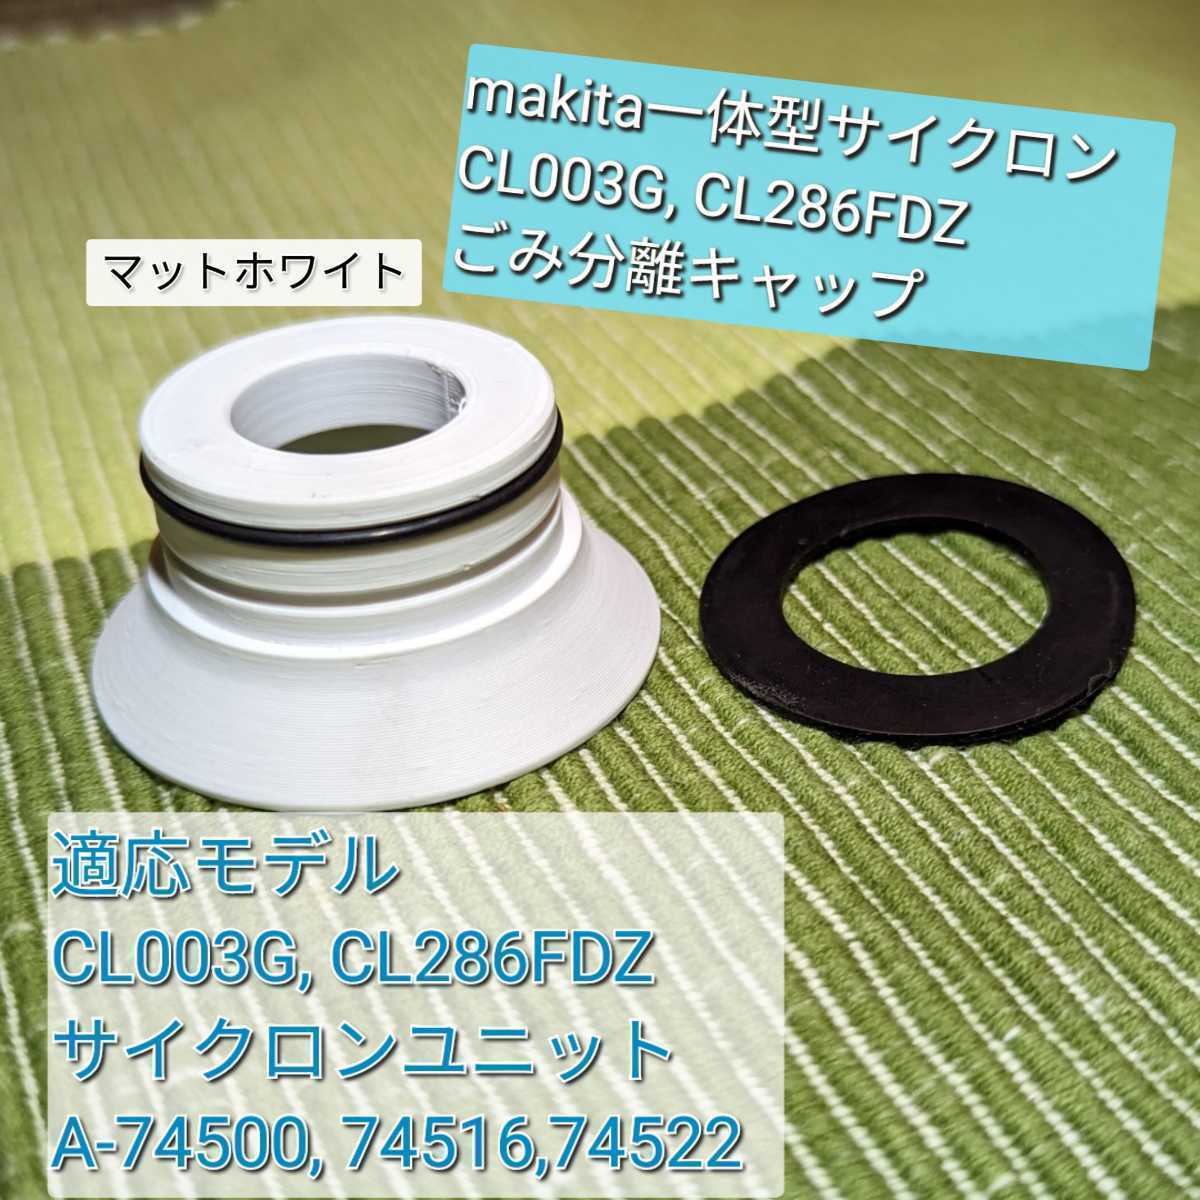  Makita makita Cyclone Attachment колпак покрытие затенитель от солнца белый & резина прокладка (CL003G CL286FDZ Cyclone в одном корпусе для пылесос )